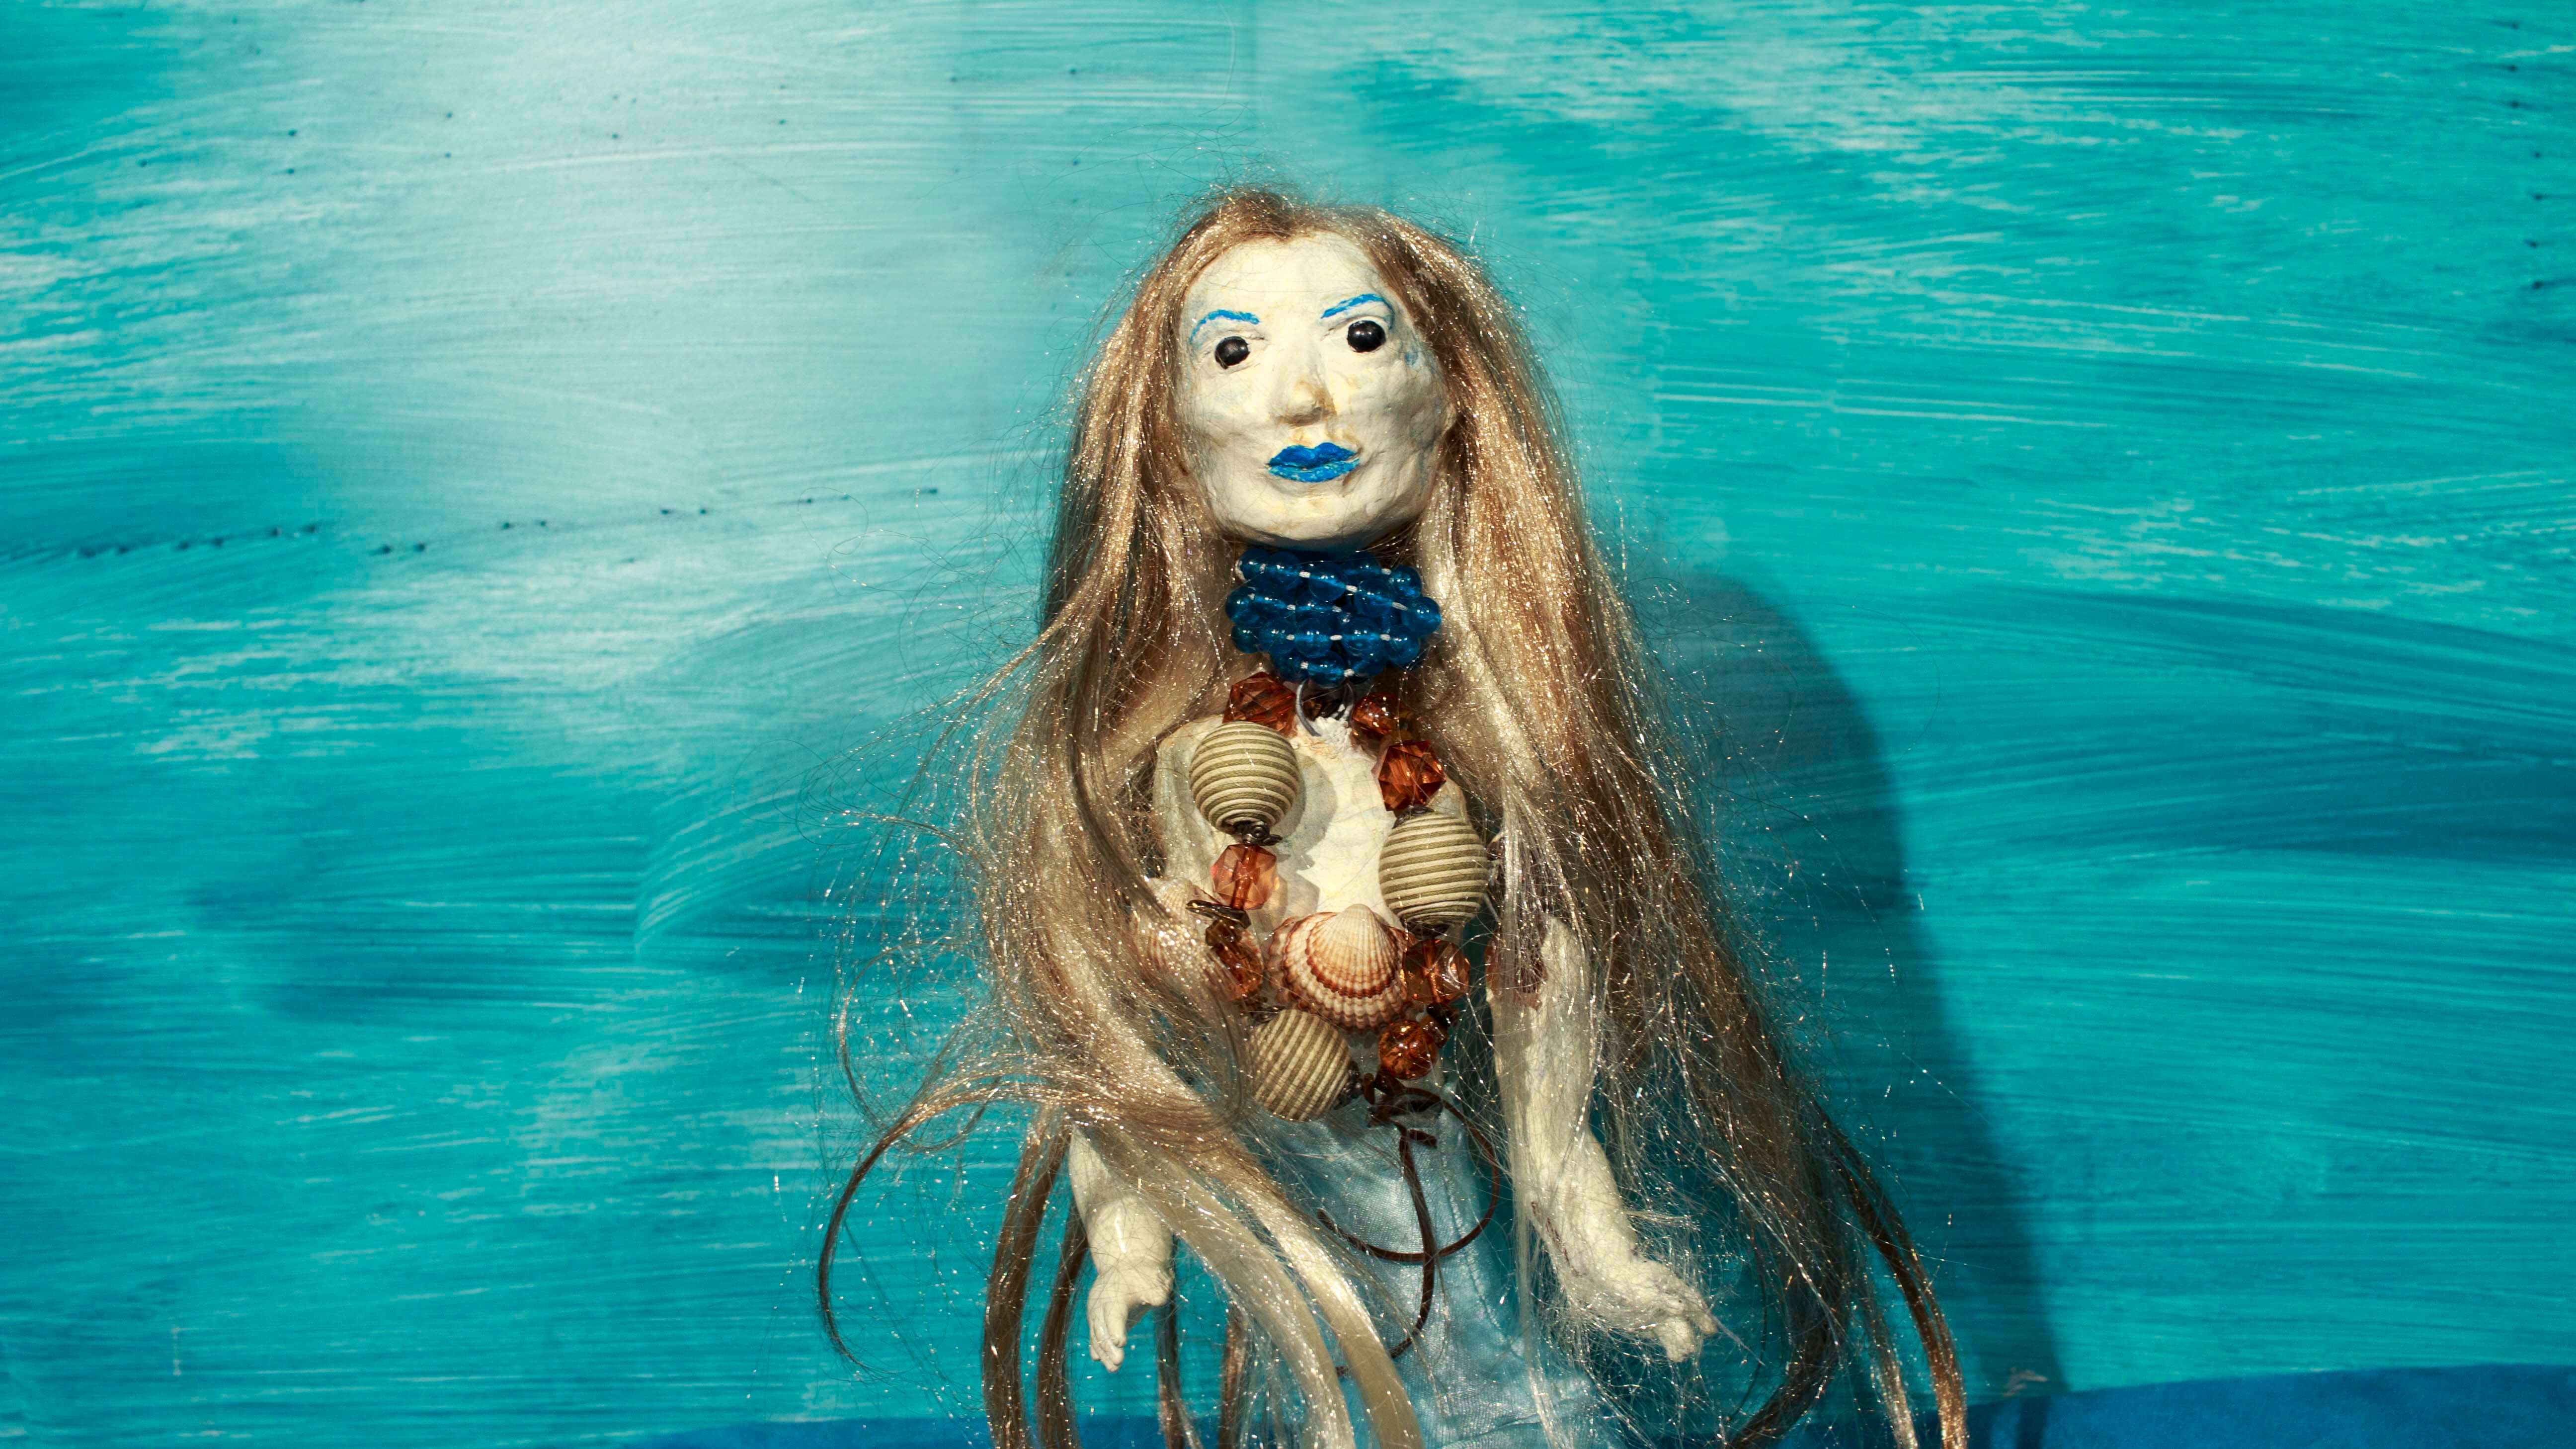 lalka postaci syreny ma długie splątane włosy, jasną cerę, niebieskie usta i brwi, na szyi niebieskie korale oraz naszyjnik z muszli i bursztynu, czarne oczy, niebieskie tło